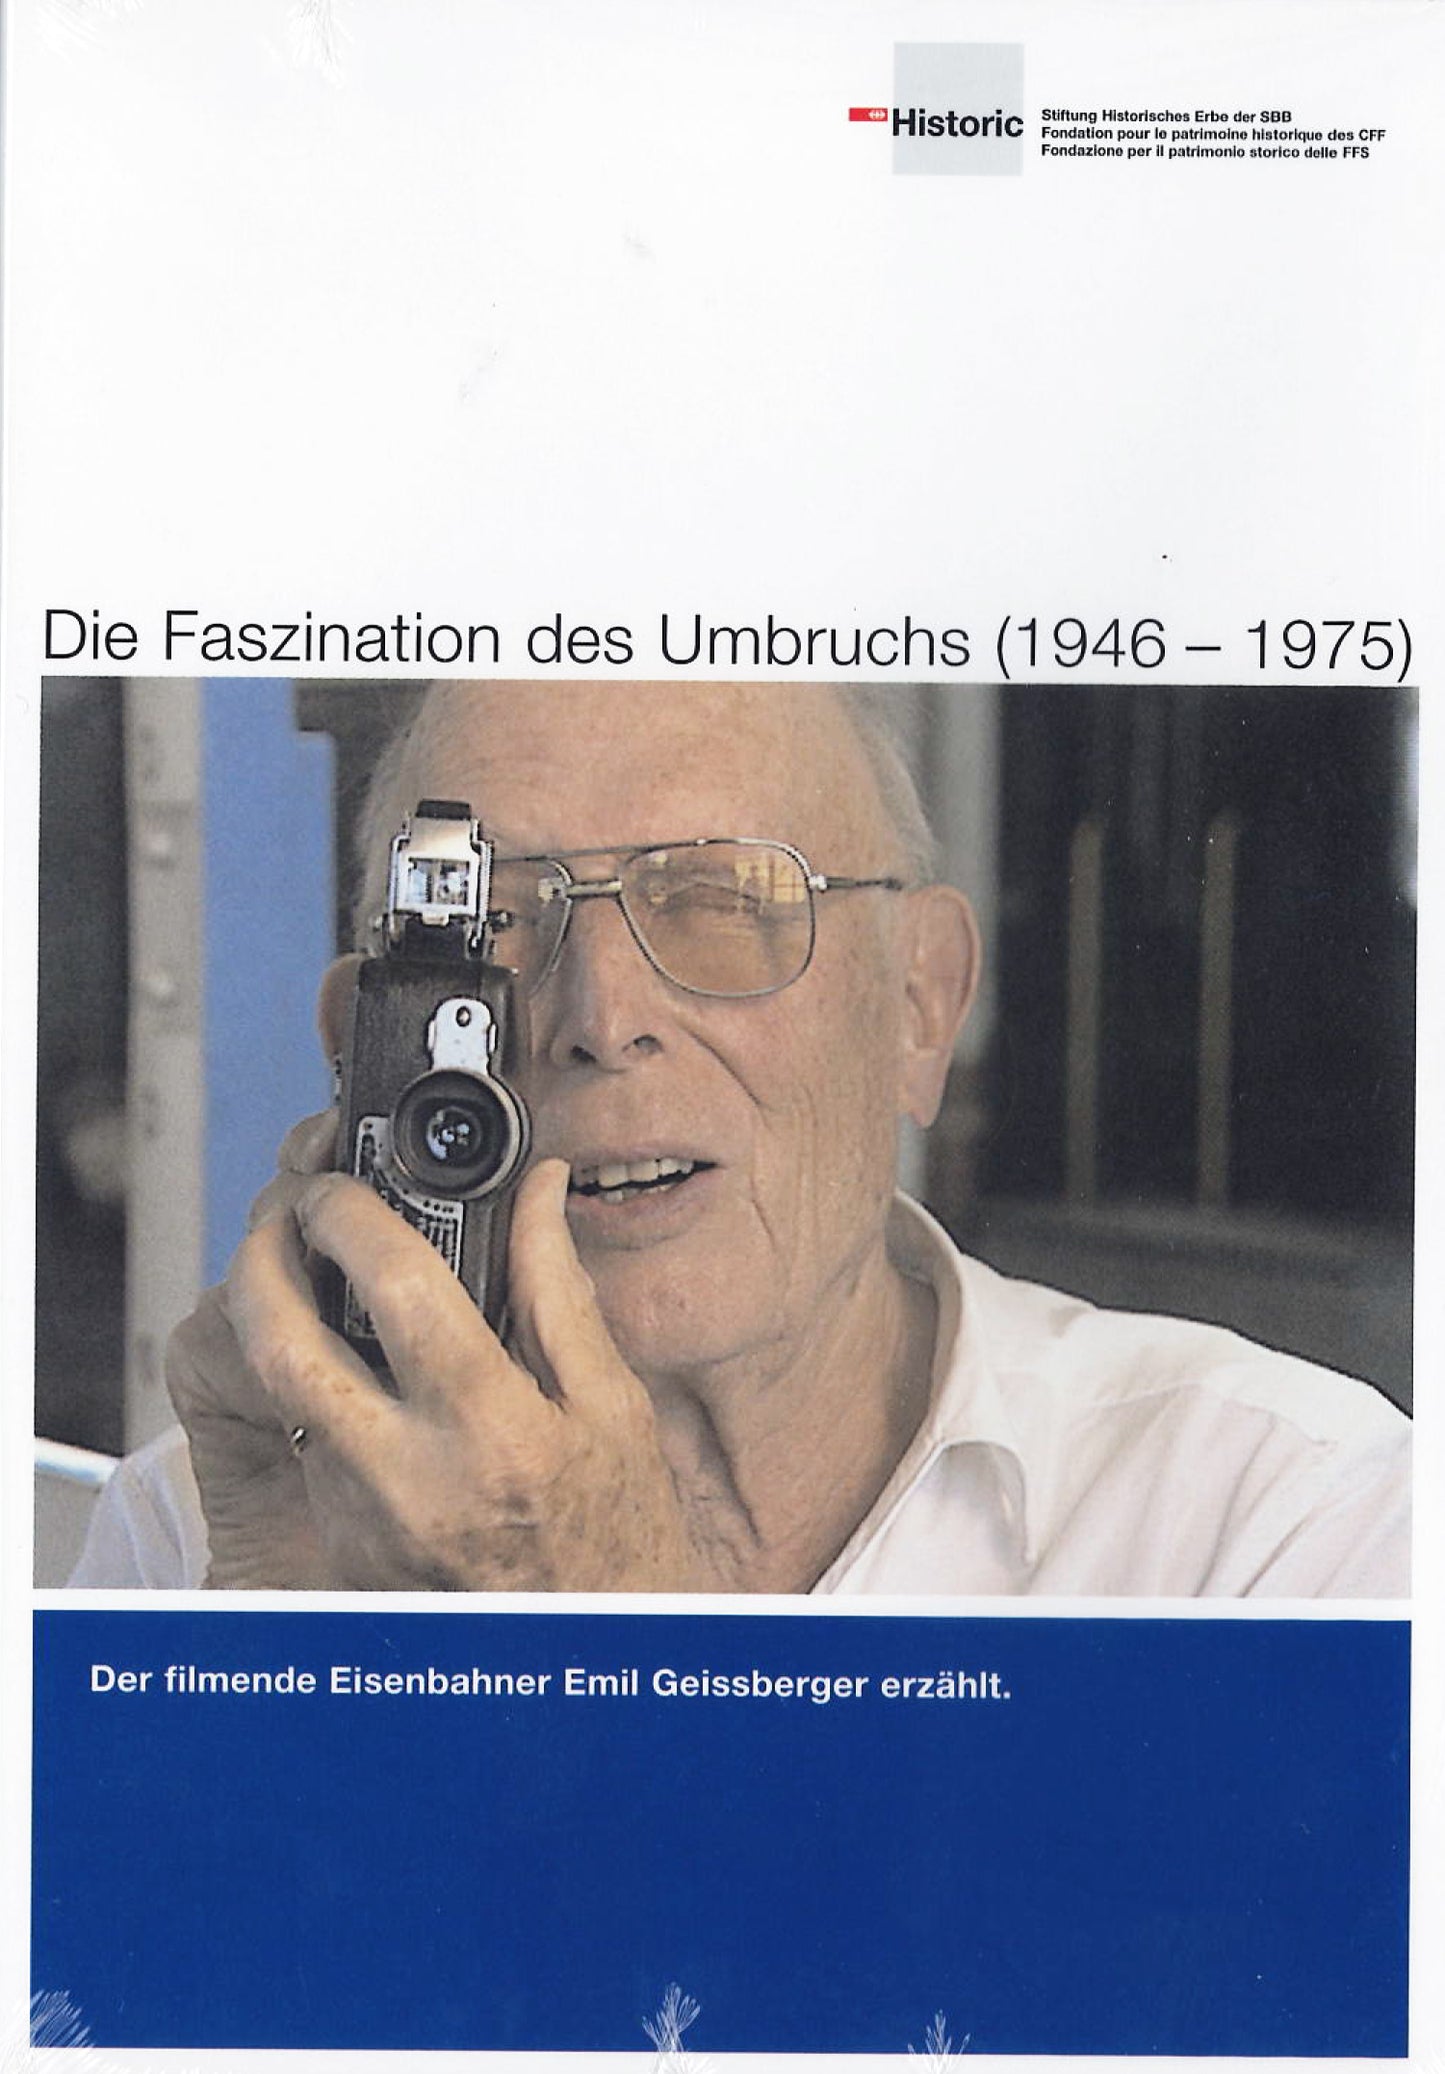 Die Faszination des Umbruchs (1946-1975) - DVD